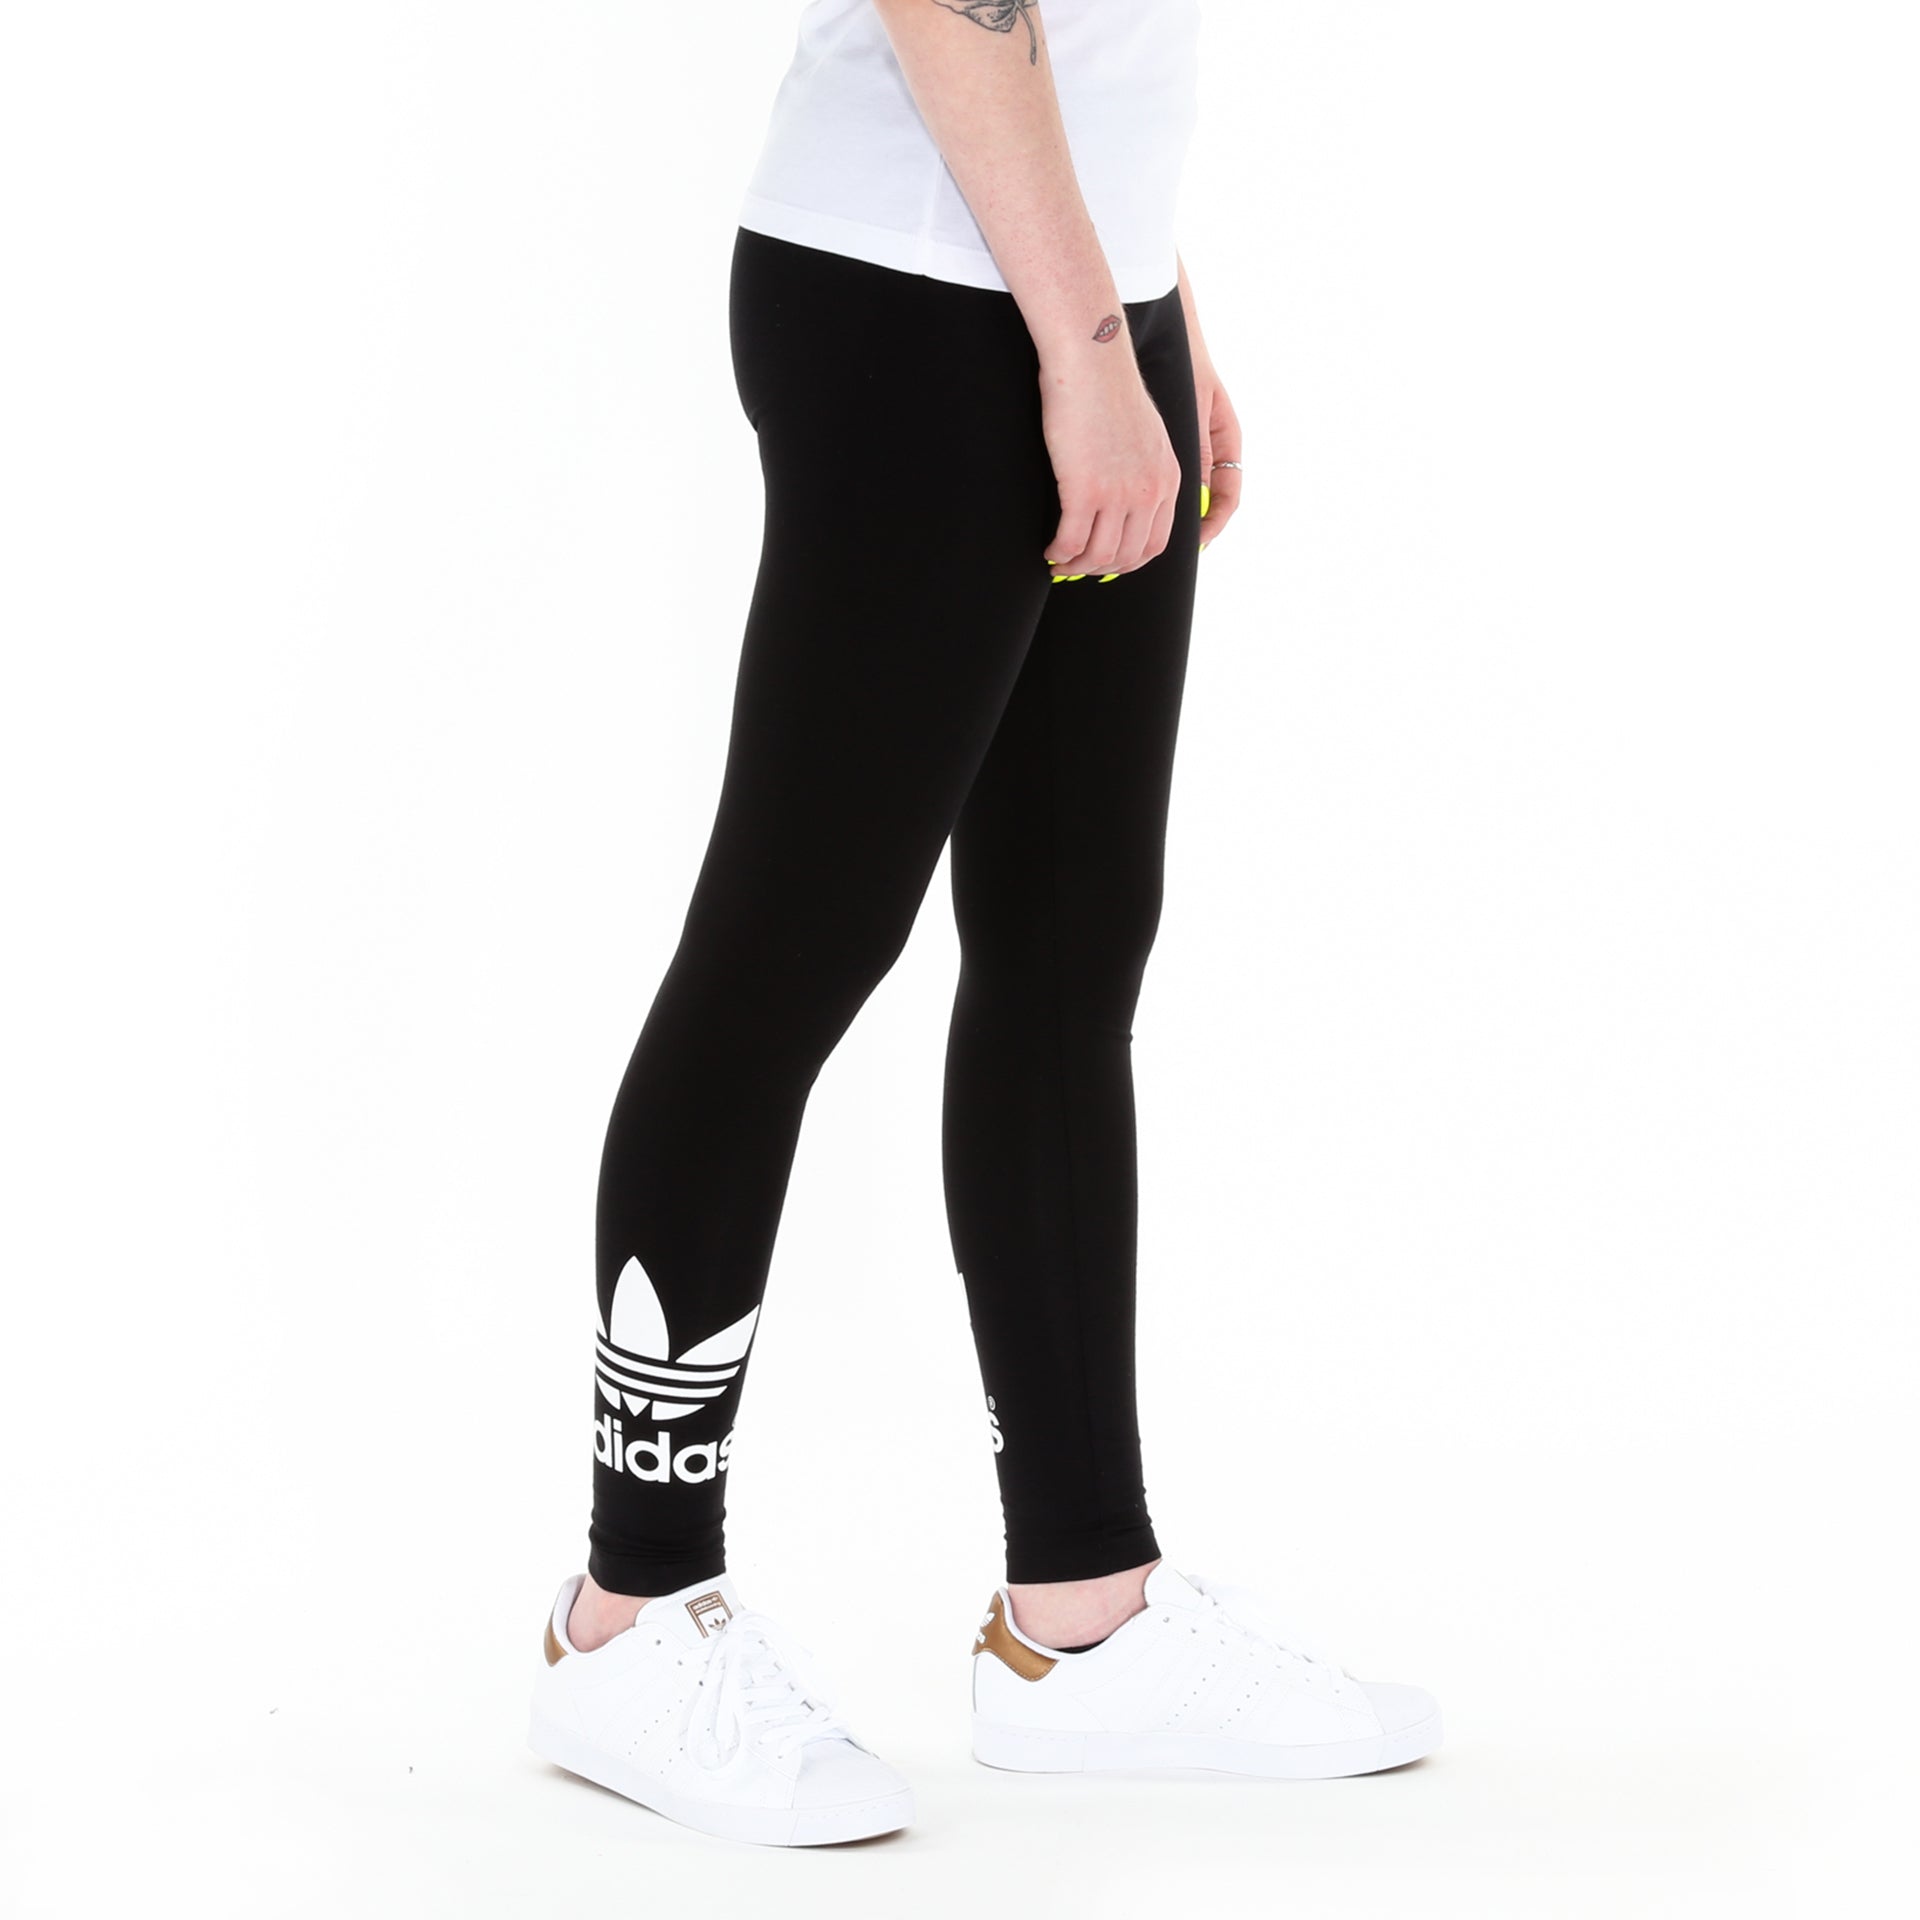 adidas Originals Women's 3-Stripes Leggings, Black, Trefoil